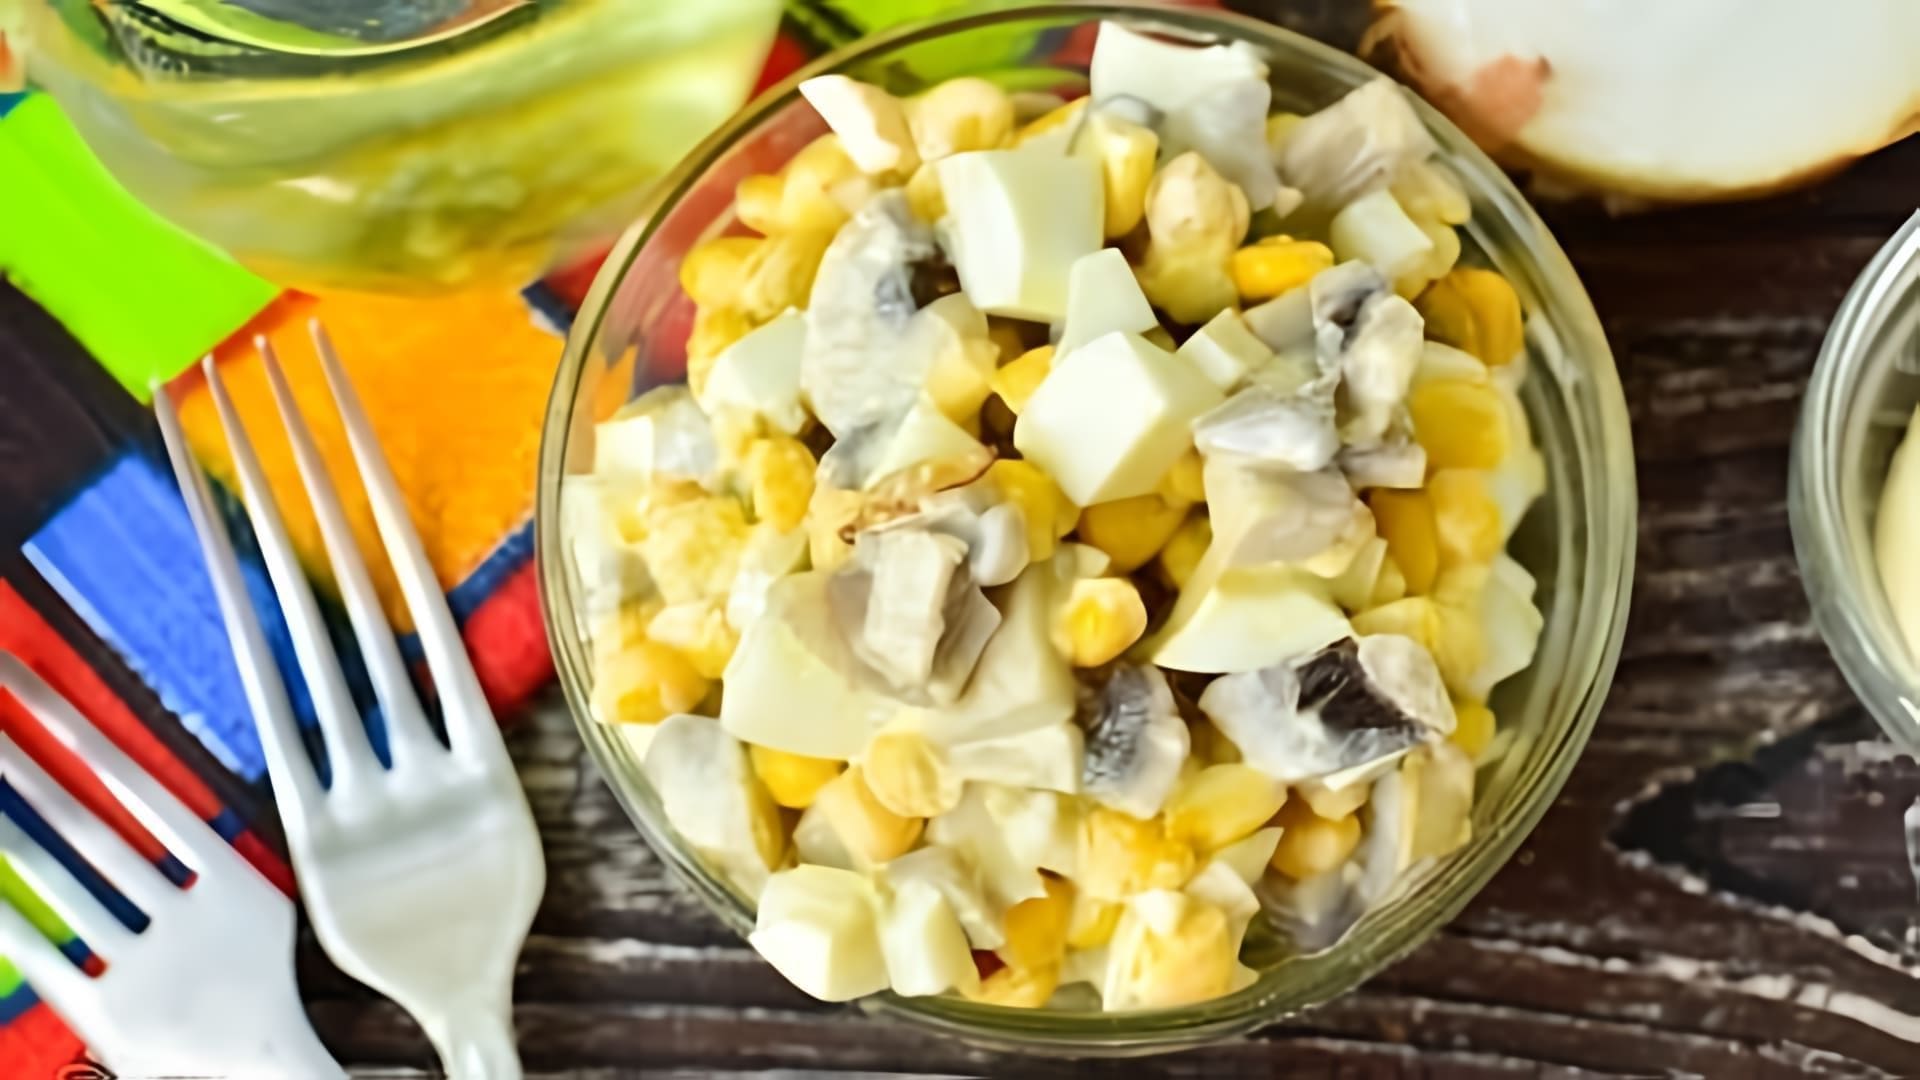 В этом видео демонстрируется рецепт салата из консервированных шампиньонов и кукурузы